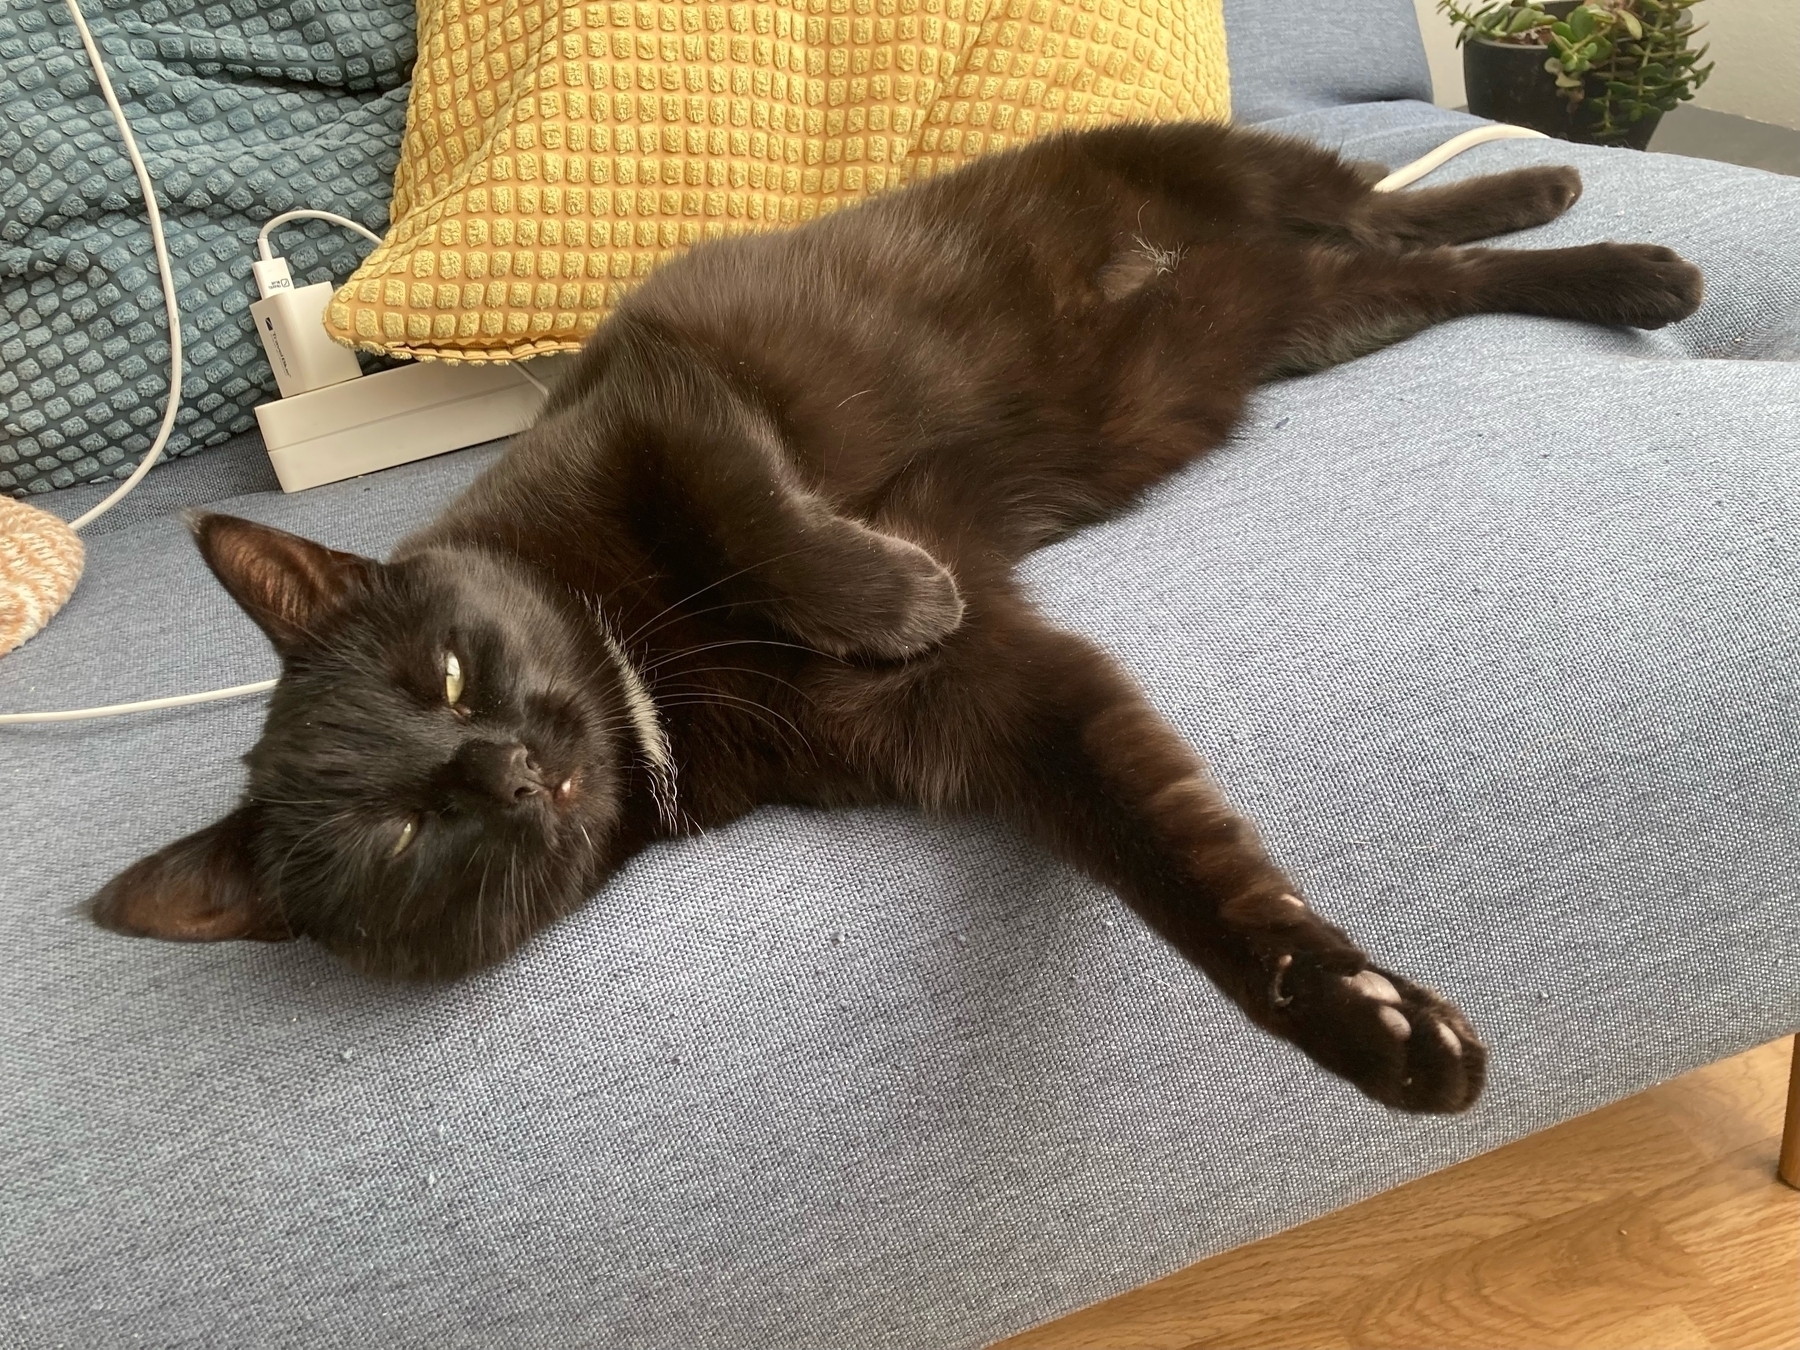 Kolka, a black cat, lazily looks through half-open eyes.